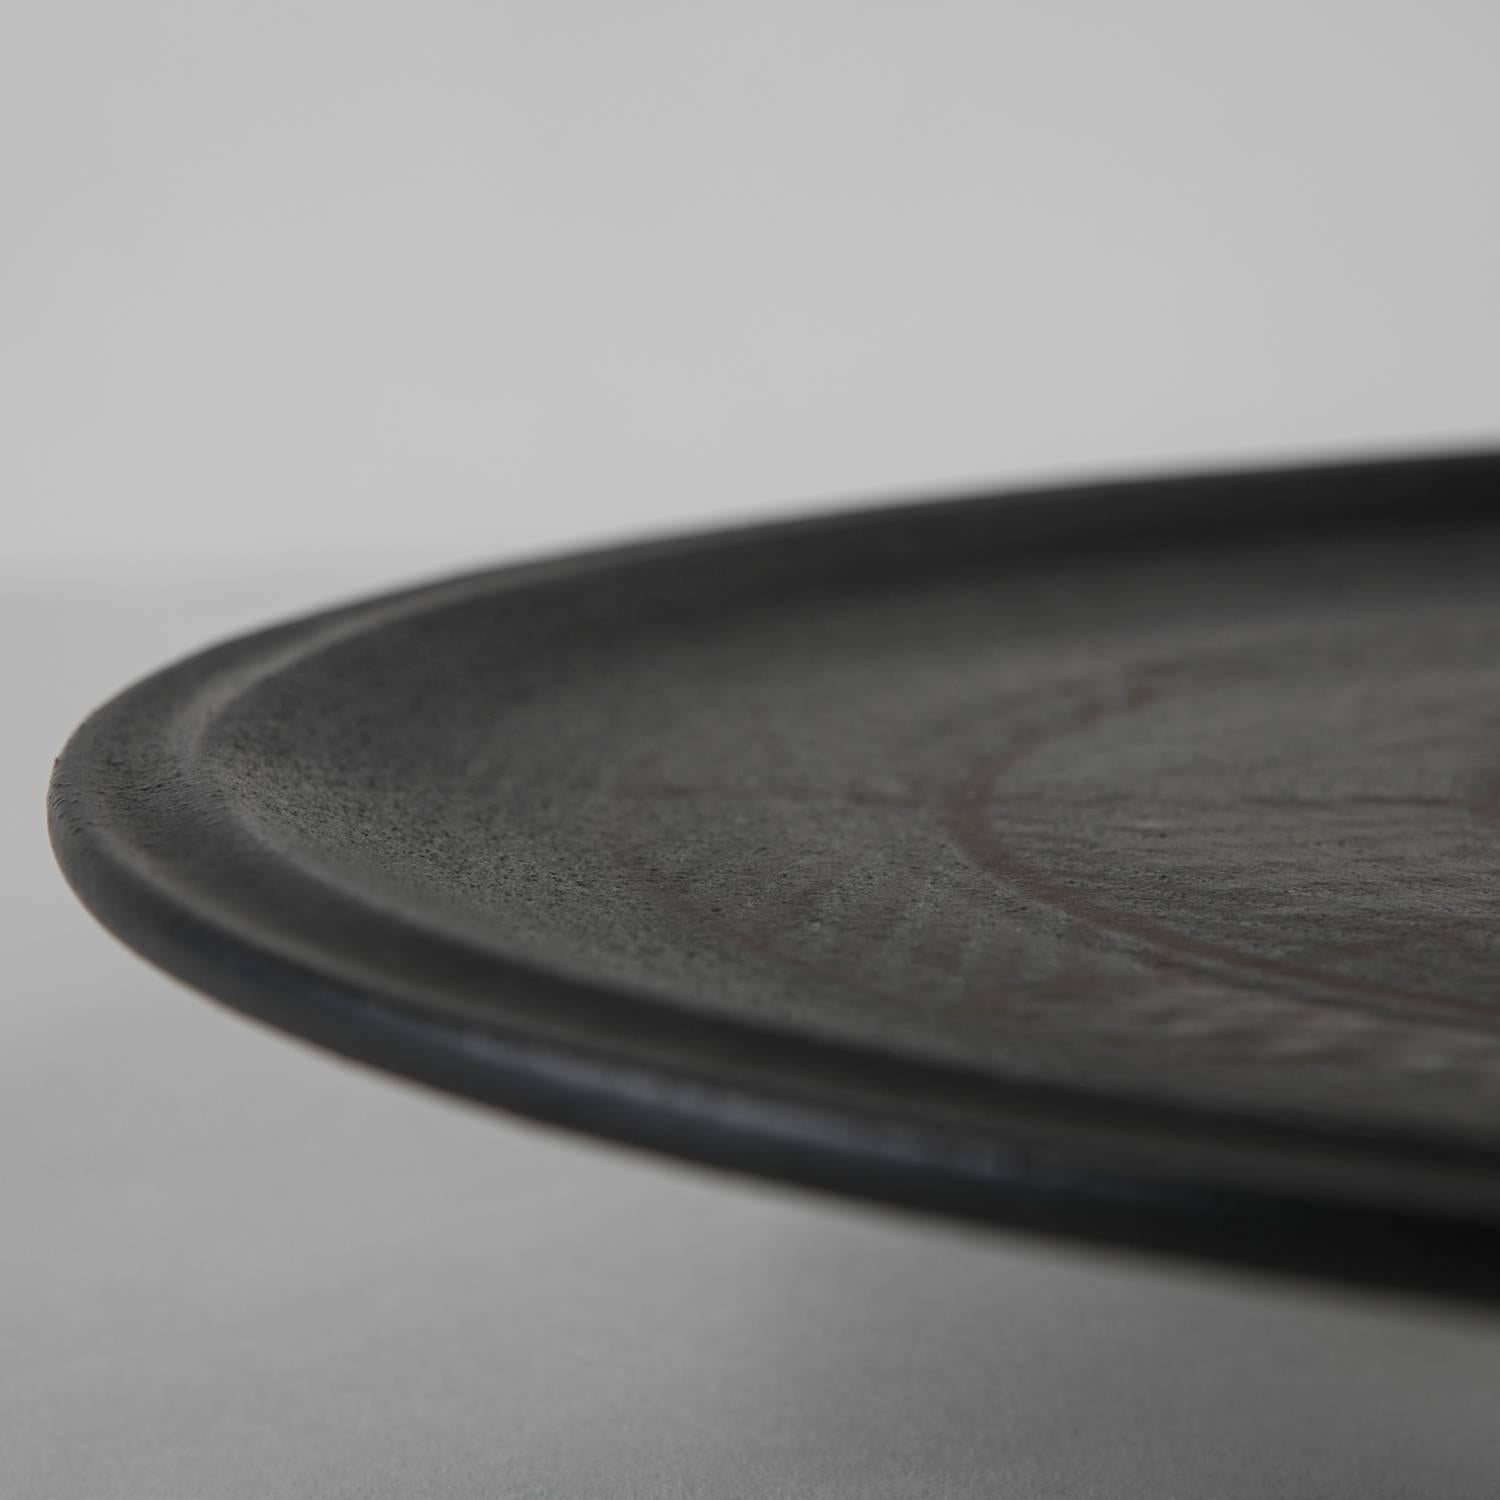 Remarquable assiette en céramique de Tasca.
Décoration asymétrique claire sur fond sombre.